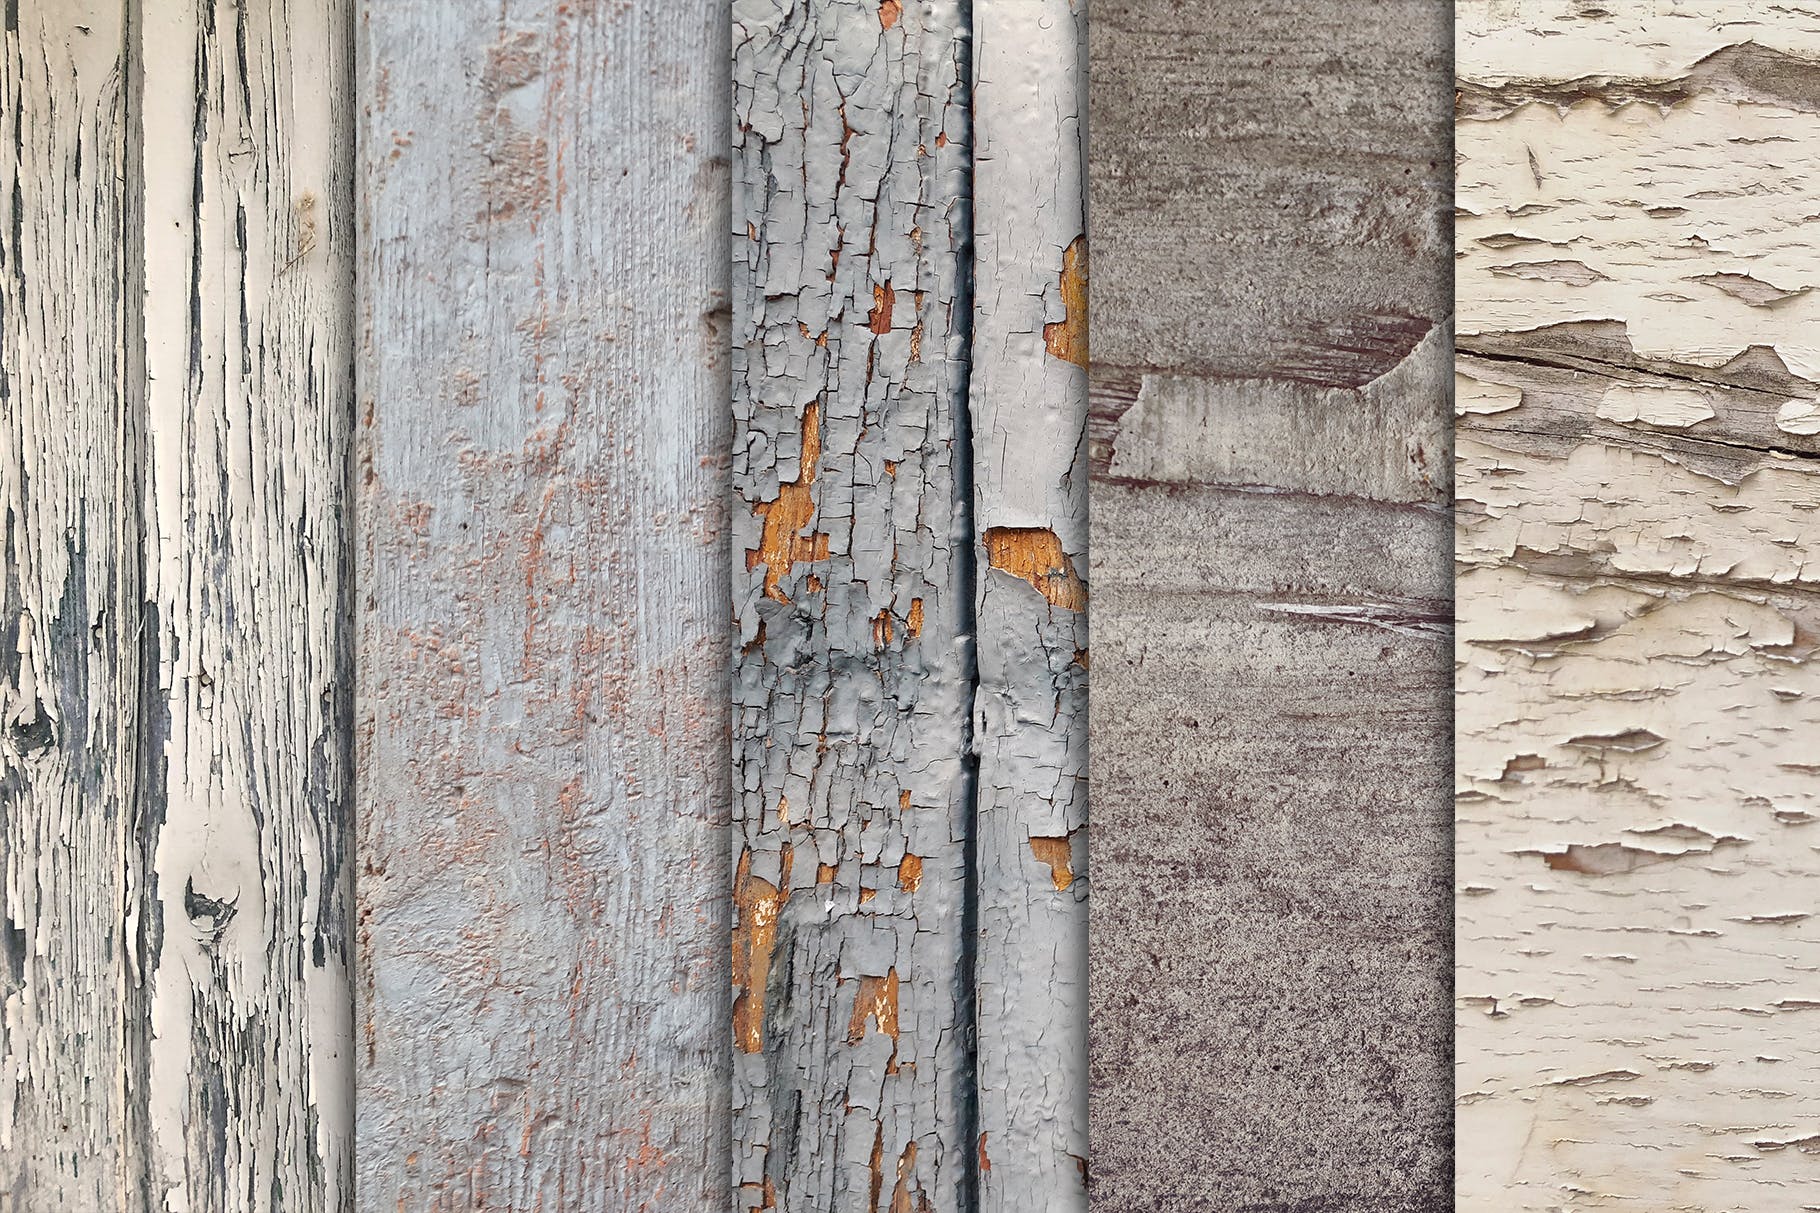 10张古老木地板高清照片图片背景素材v3 Grunge Wood Textures x10 Vol 3插图(2)